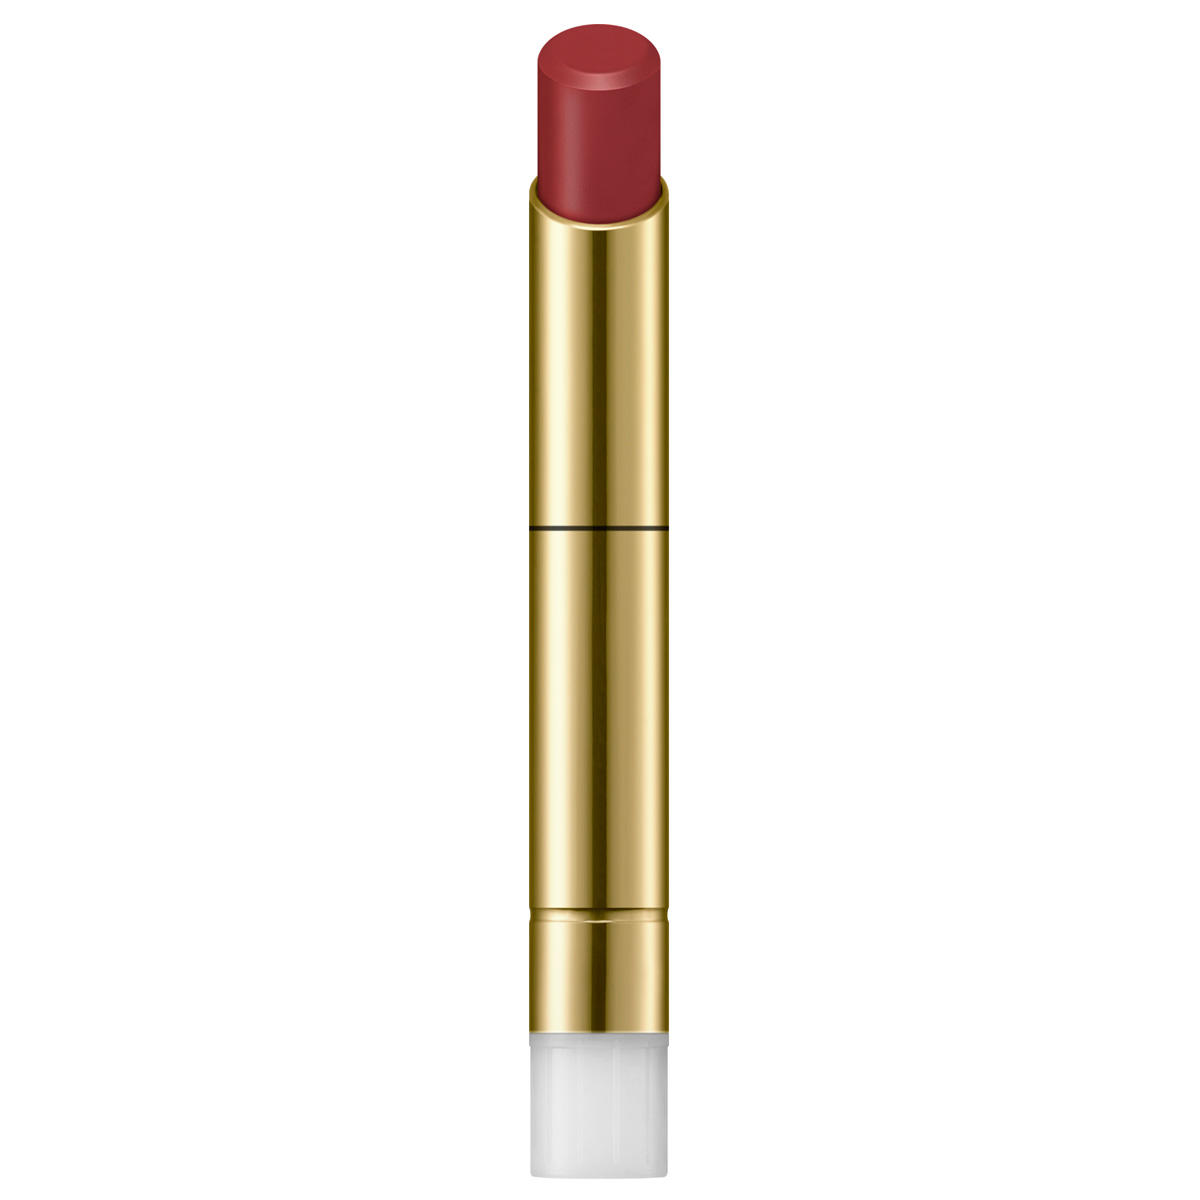 SENSAI Contouring Lipstick Refill CL 01 Mauve Red 2 g - 1